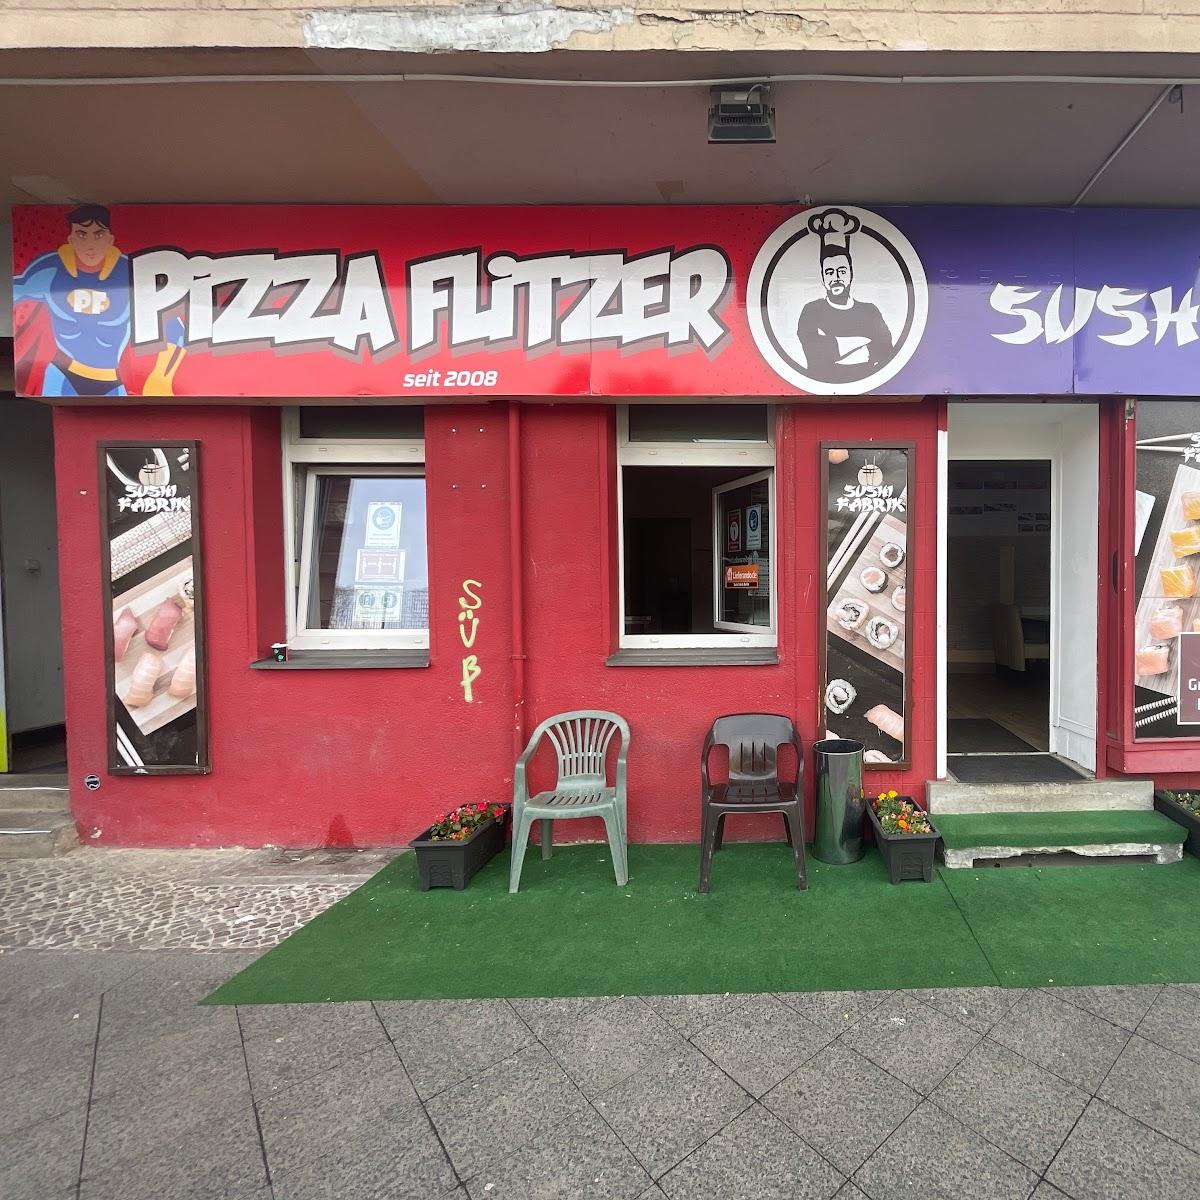 Restaurant "Pizza flitzer Neukölln" in Berlin